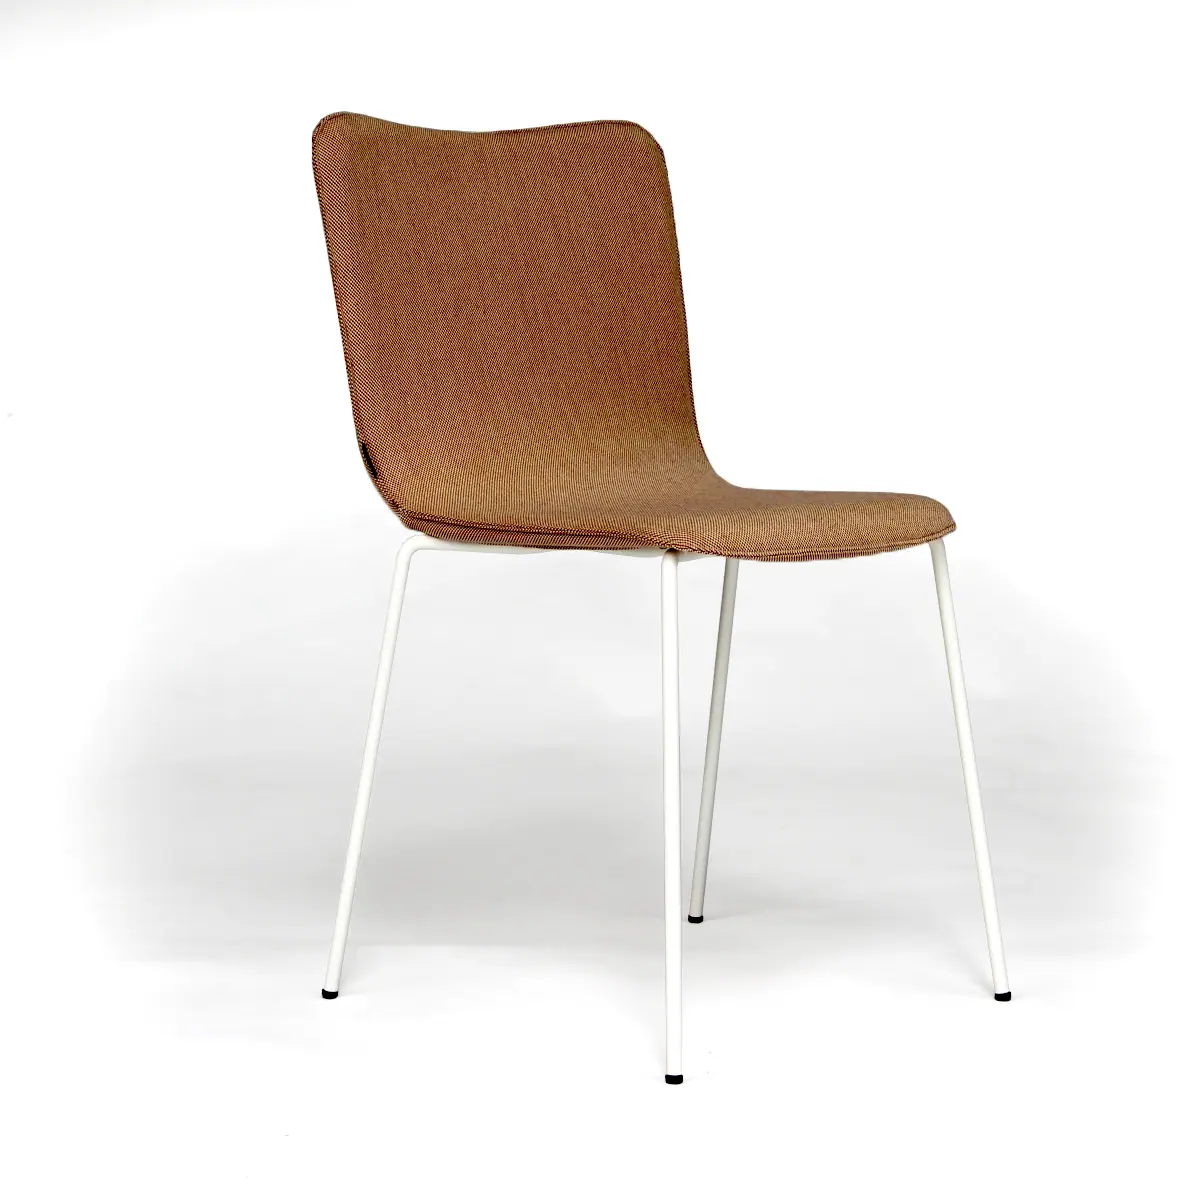 22788-22781-miro-chair-armchair